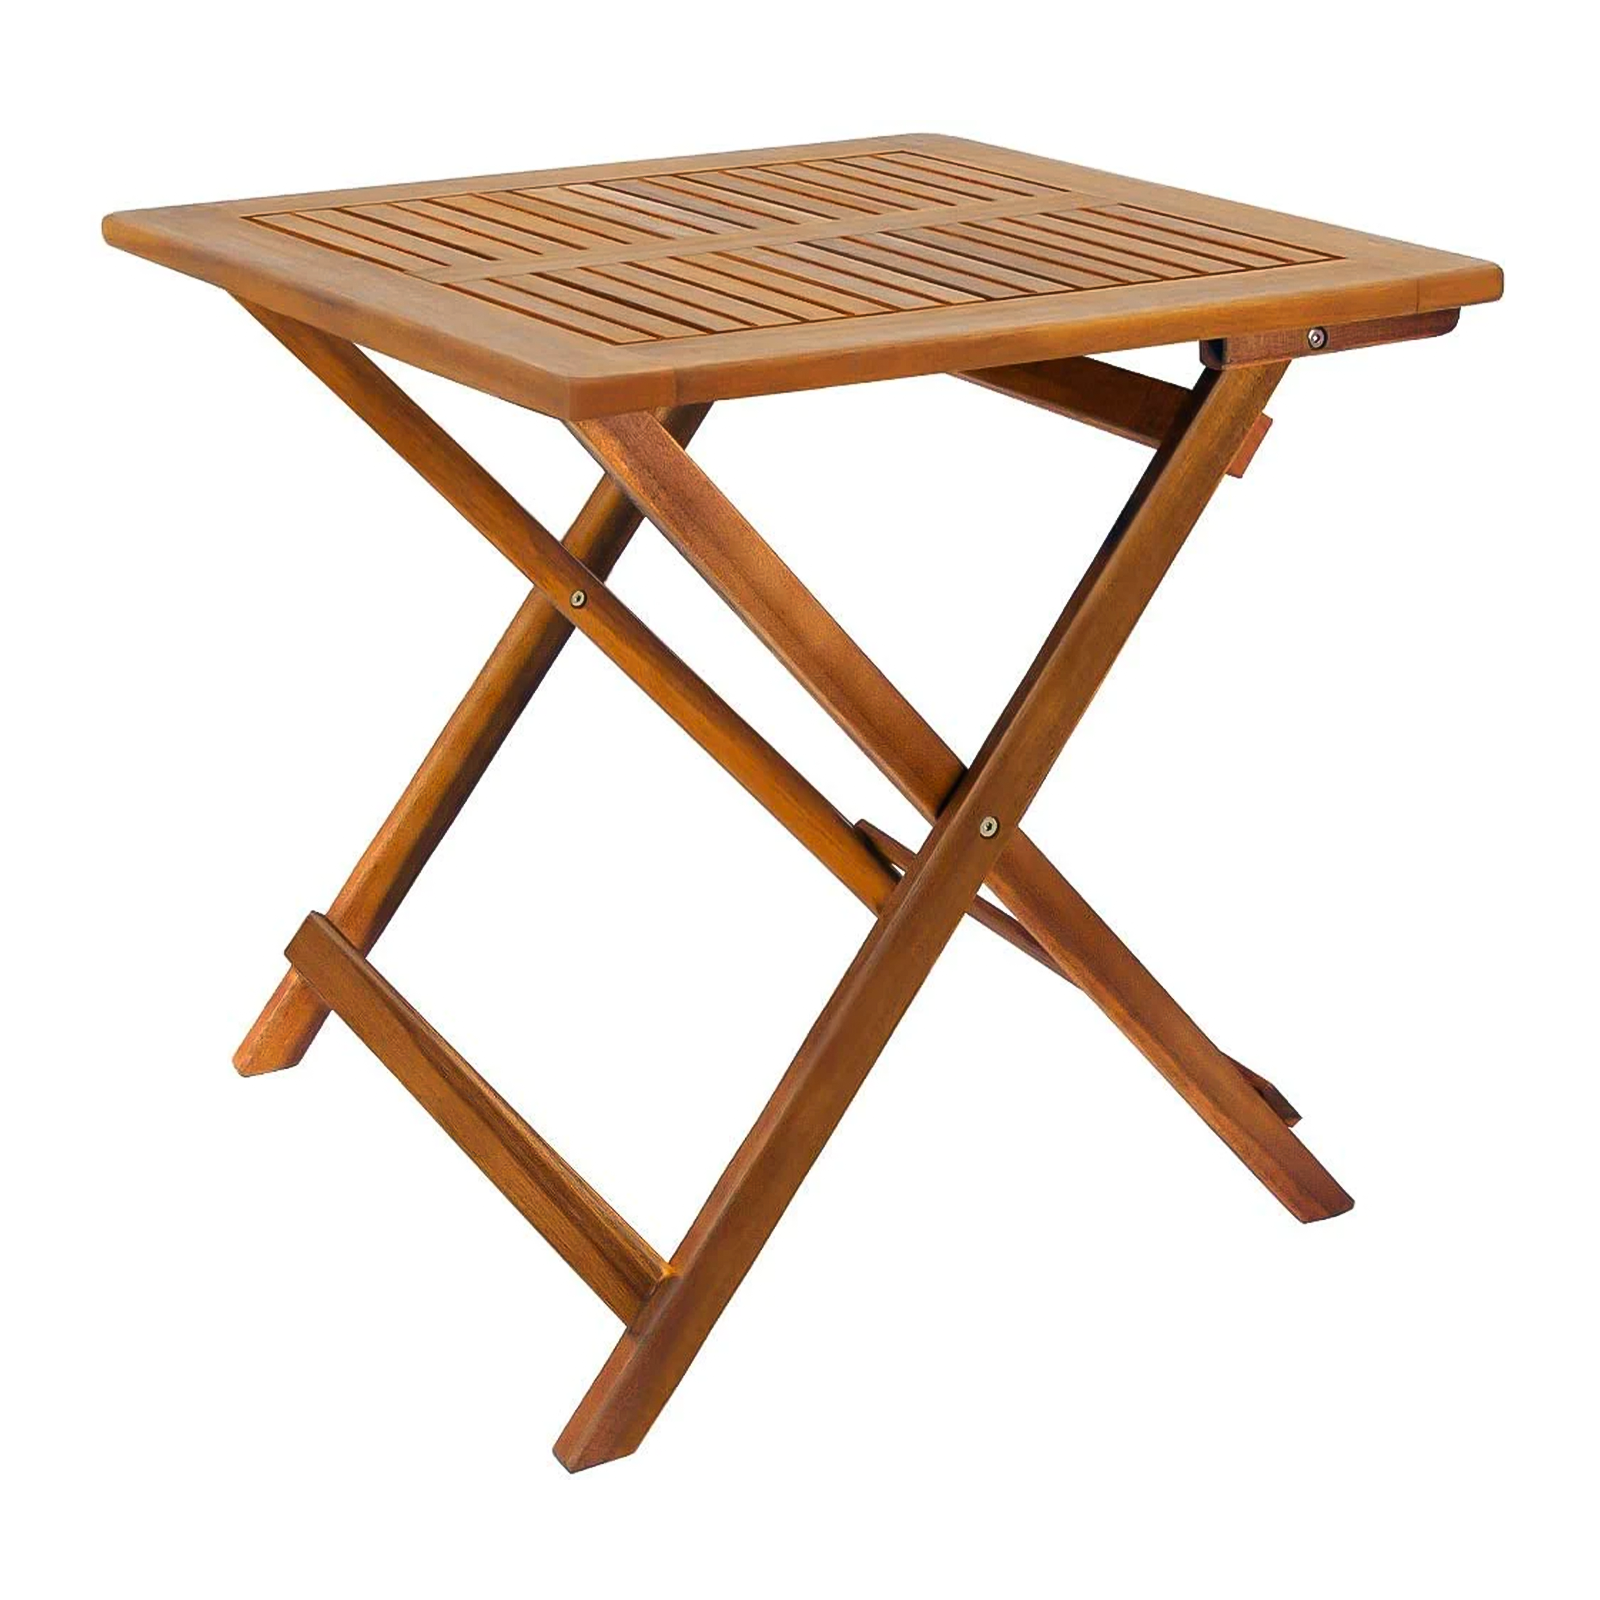 Set da pranzo in legno massello Impression sedia e tavolo richiudibile per giardino